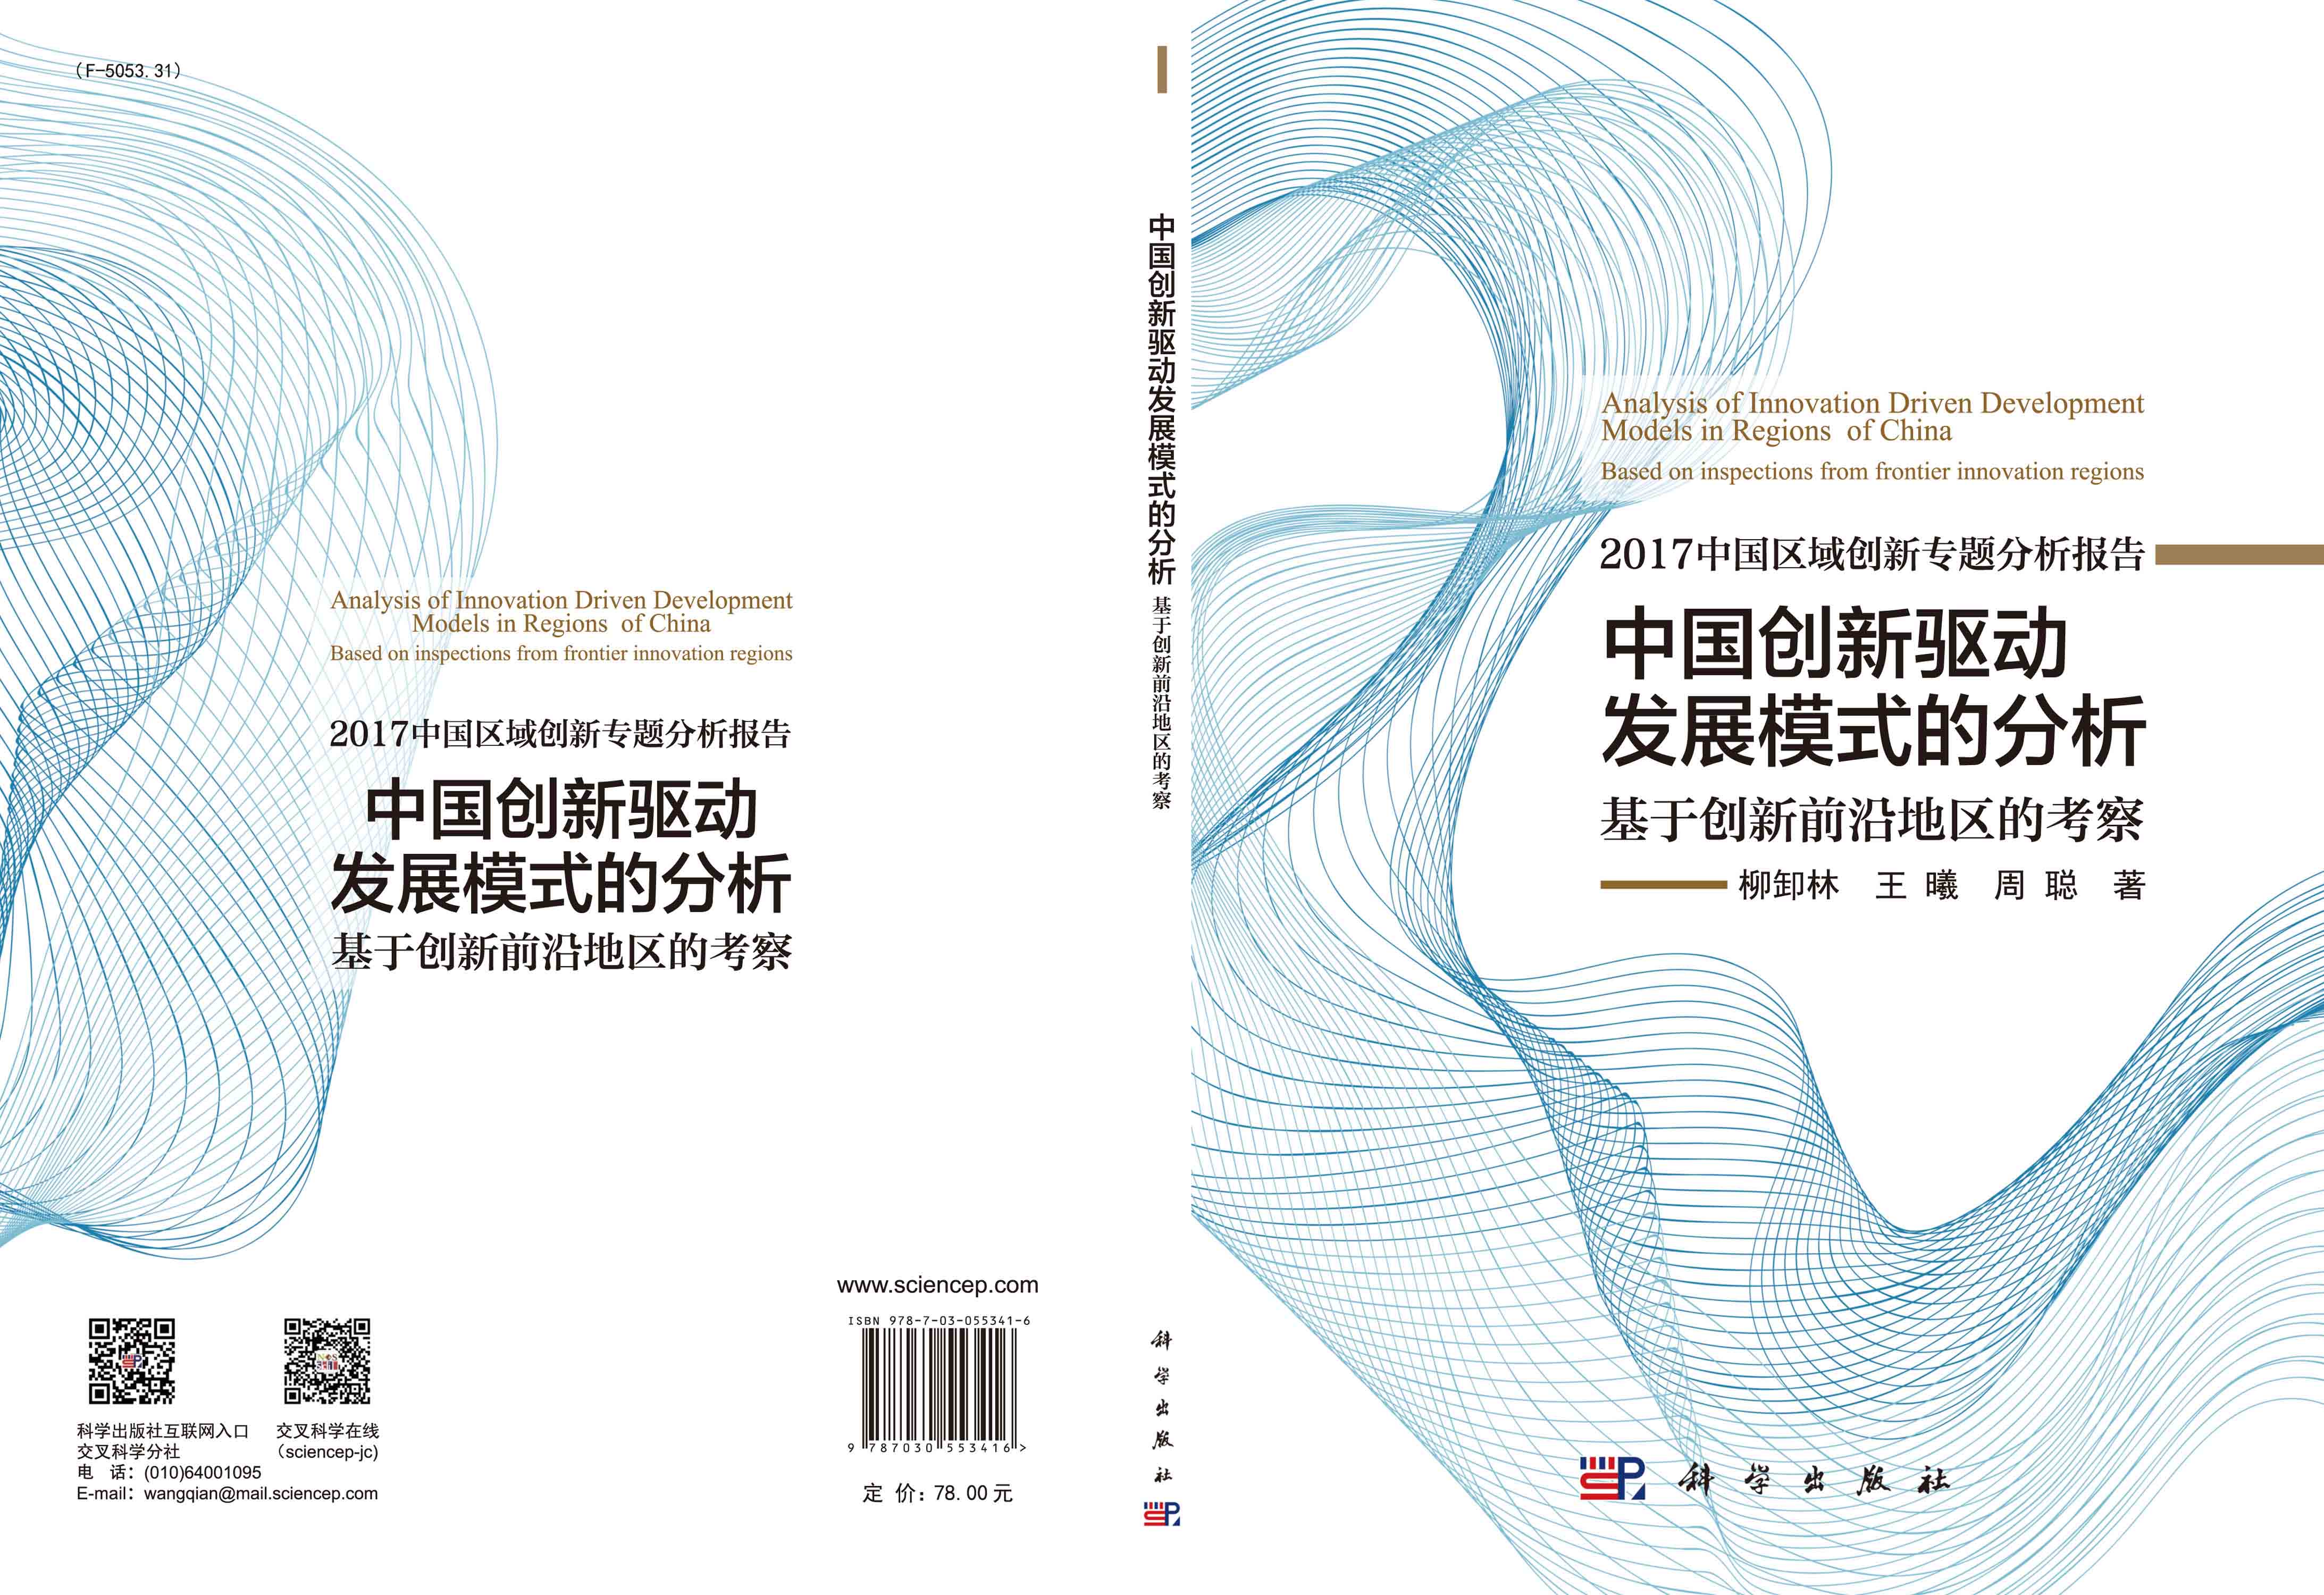 中国创新驱动发展模式的分析: 基于创新前沿地区的考察